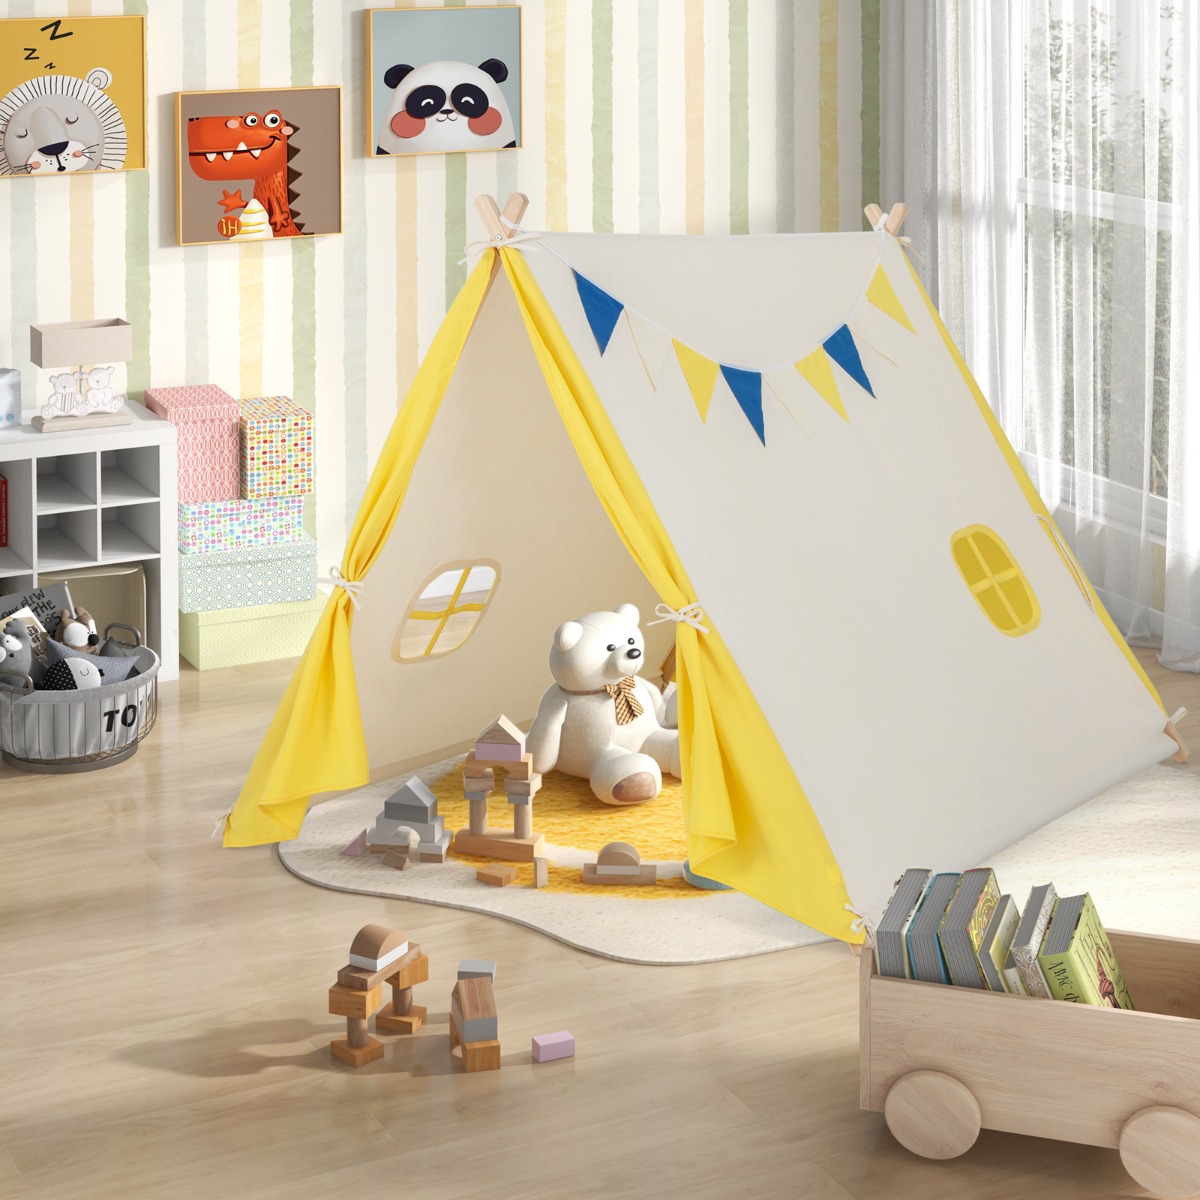 Costway Tenda da gioco per bambini con struttura in legno massiccio, Casa triangolare con bandiere decorative Beige